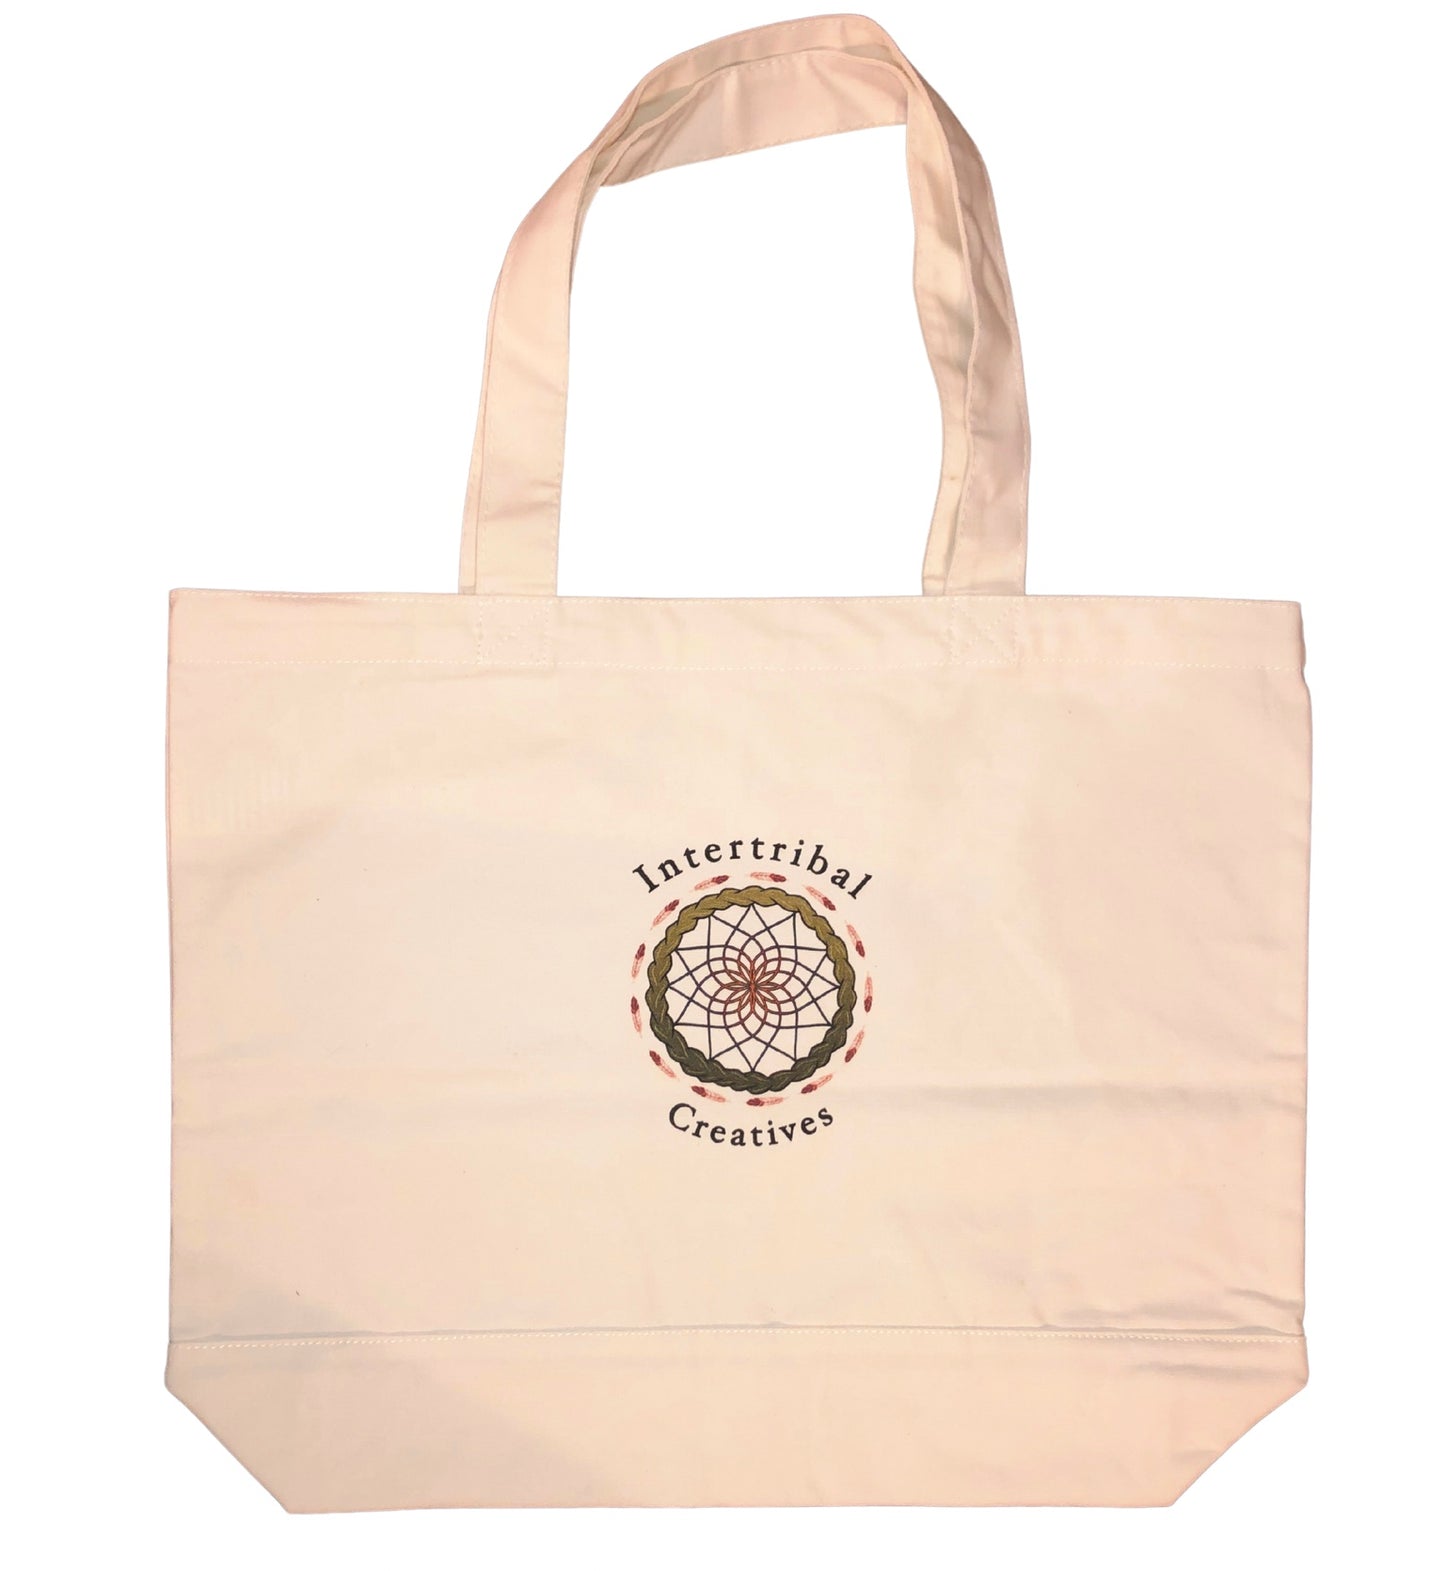 Intertribal Creatives Tote Bag